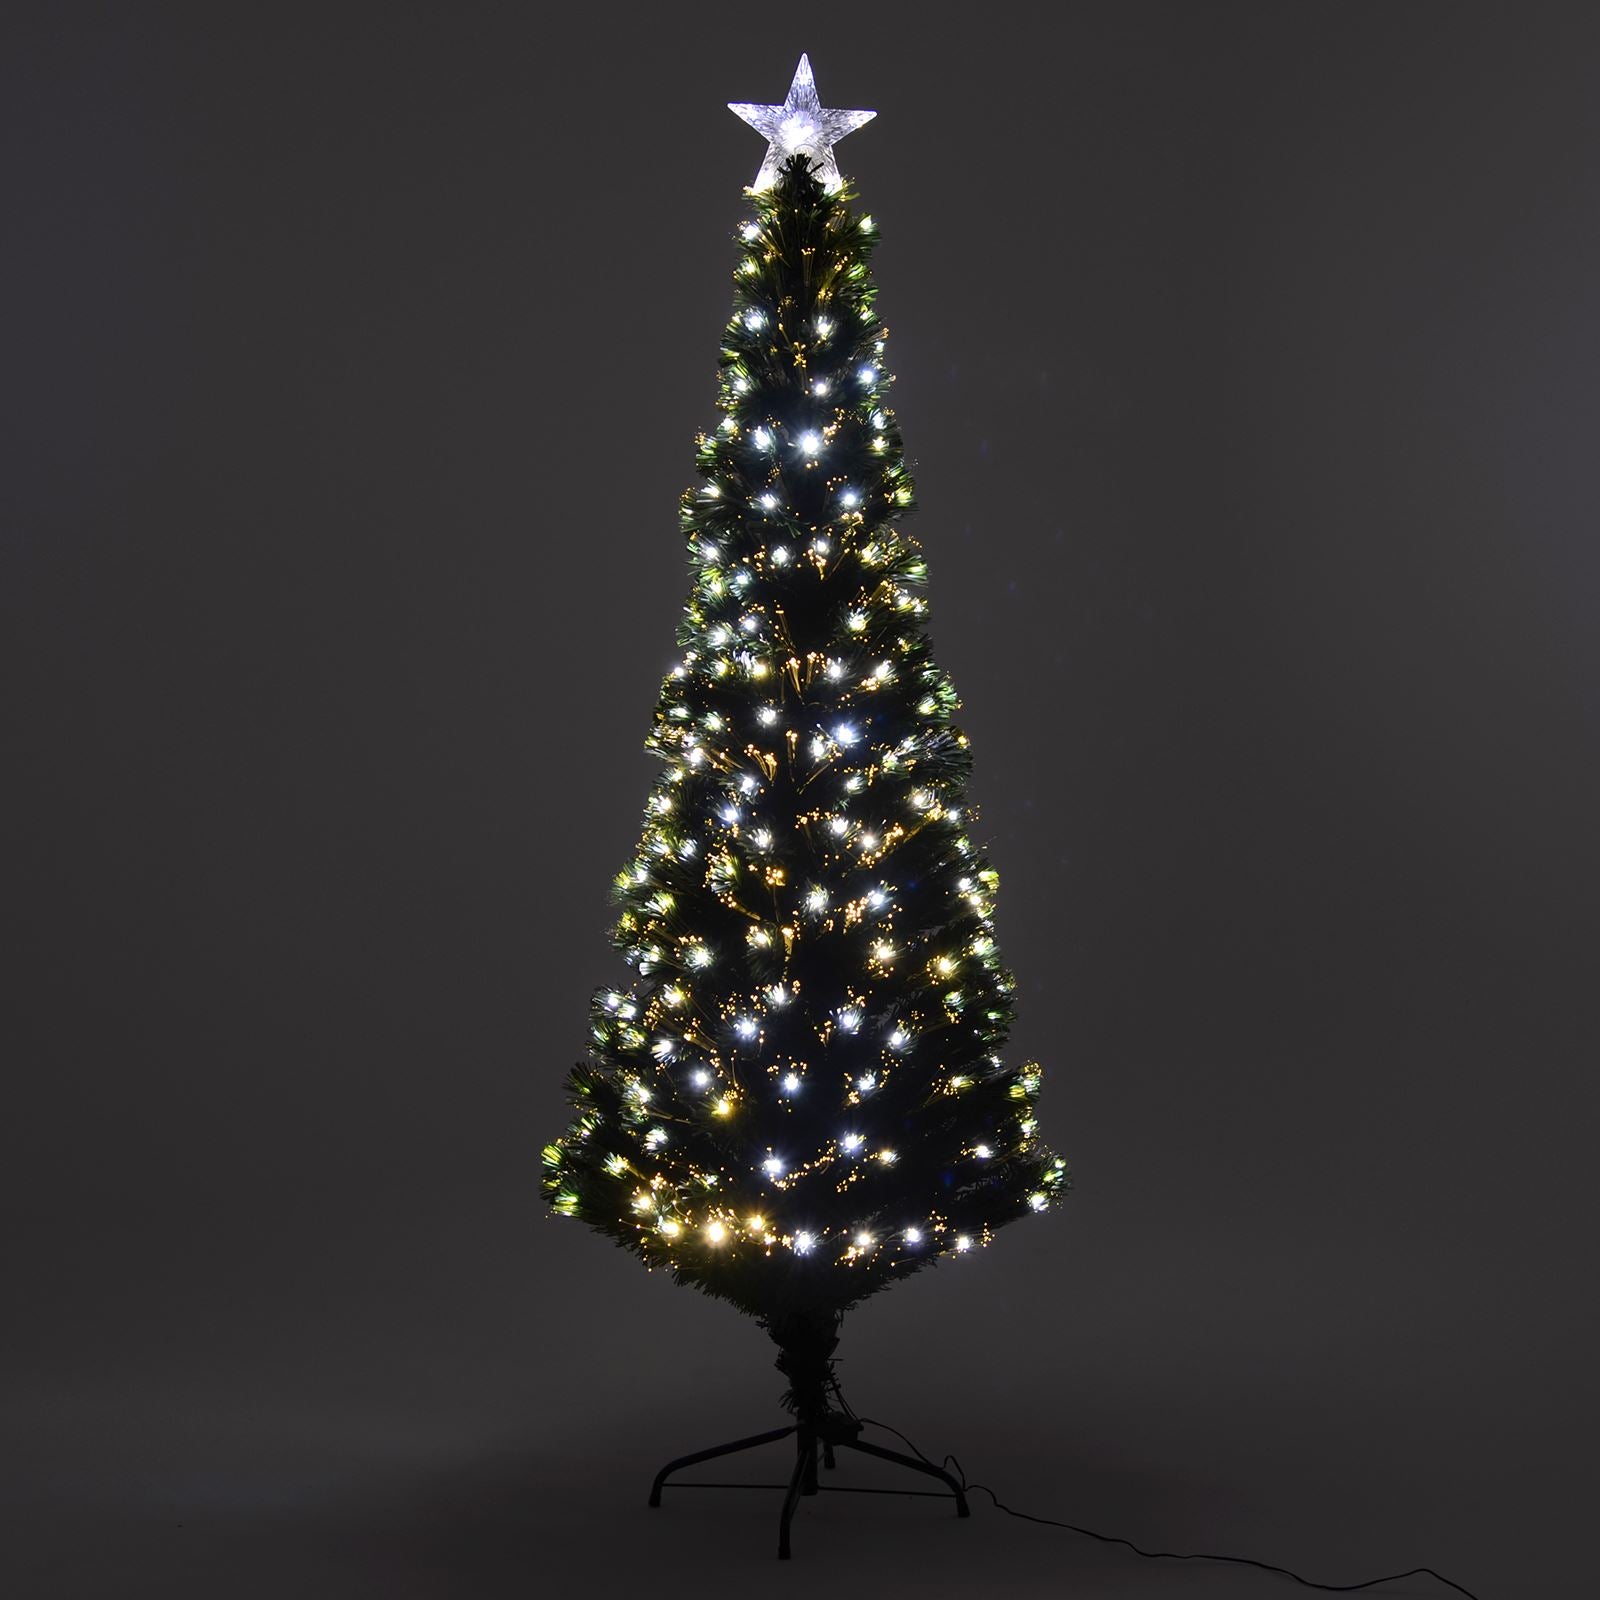 Mr Crimbo Green Pencil Christmas Tree Fibre Optic Lights - MrCrimbo.co.uk -XS5809 - 6ft -6ft christmas tree